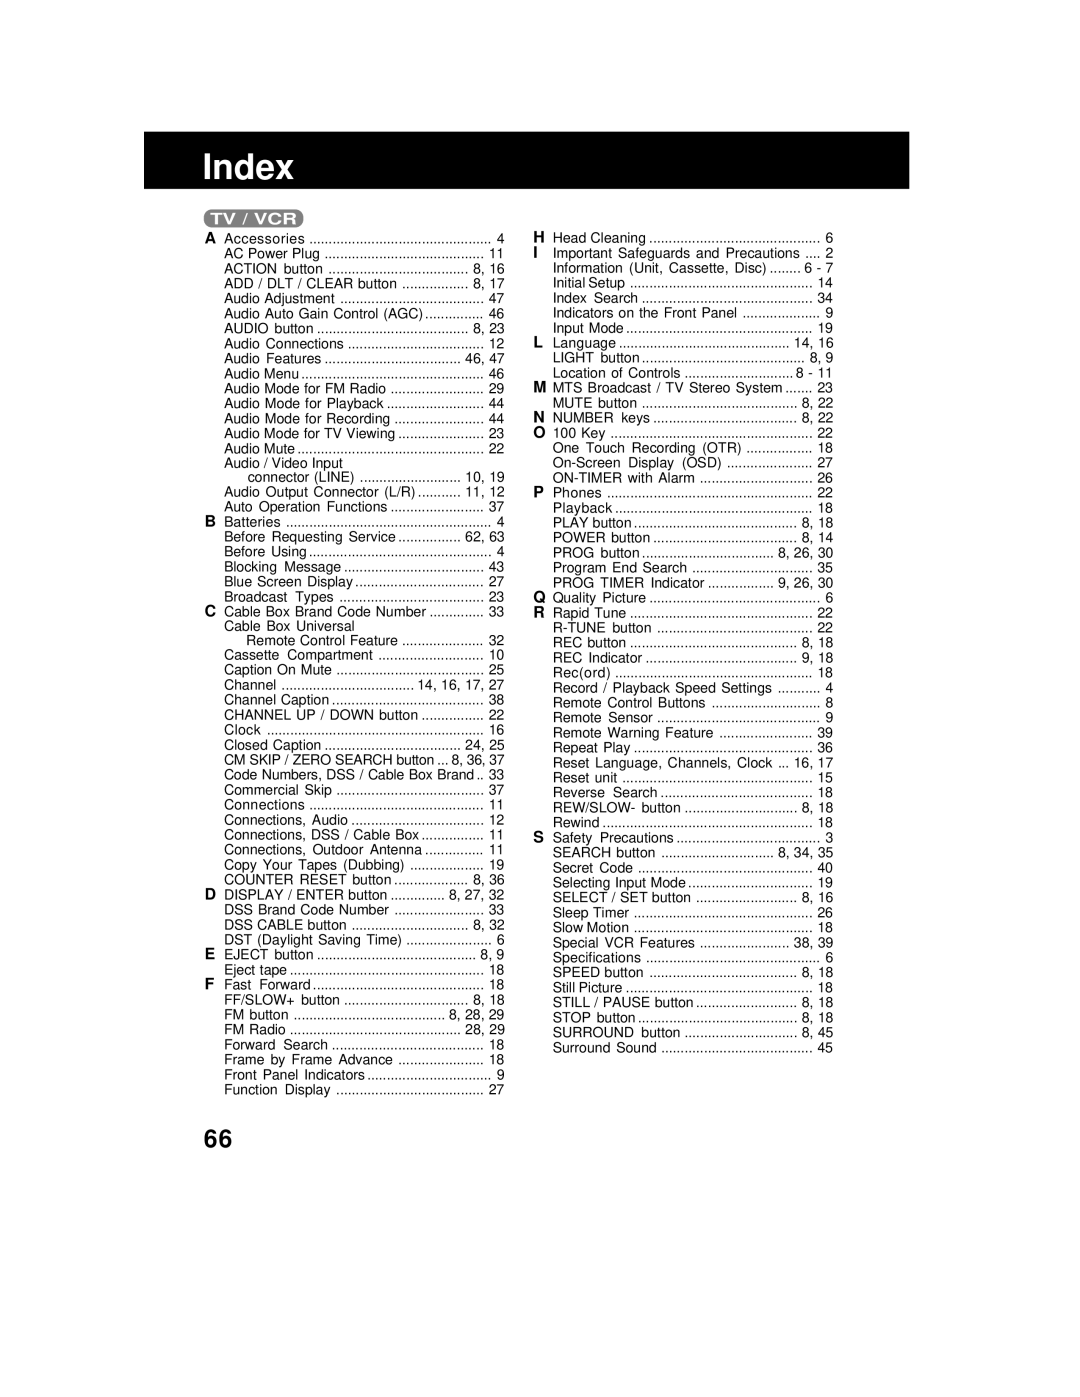 Panasonic AG 527DVDE manual Index, Tv / Vcr 